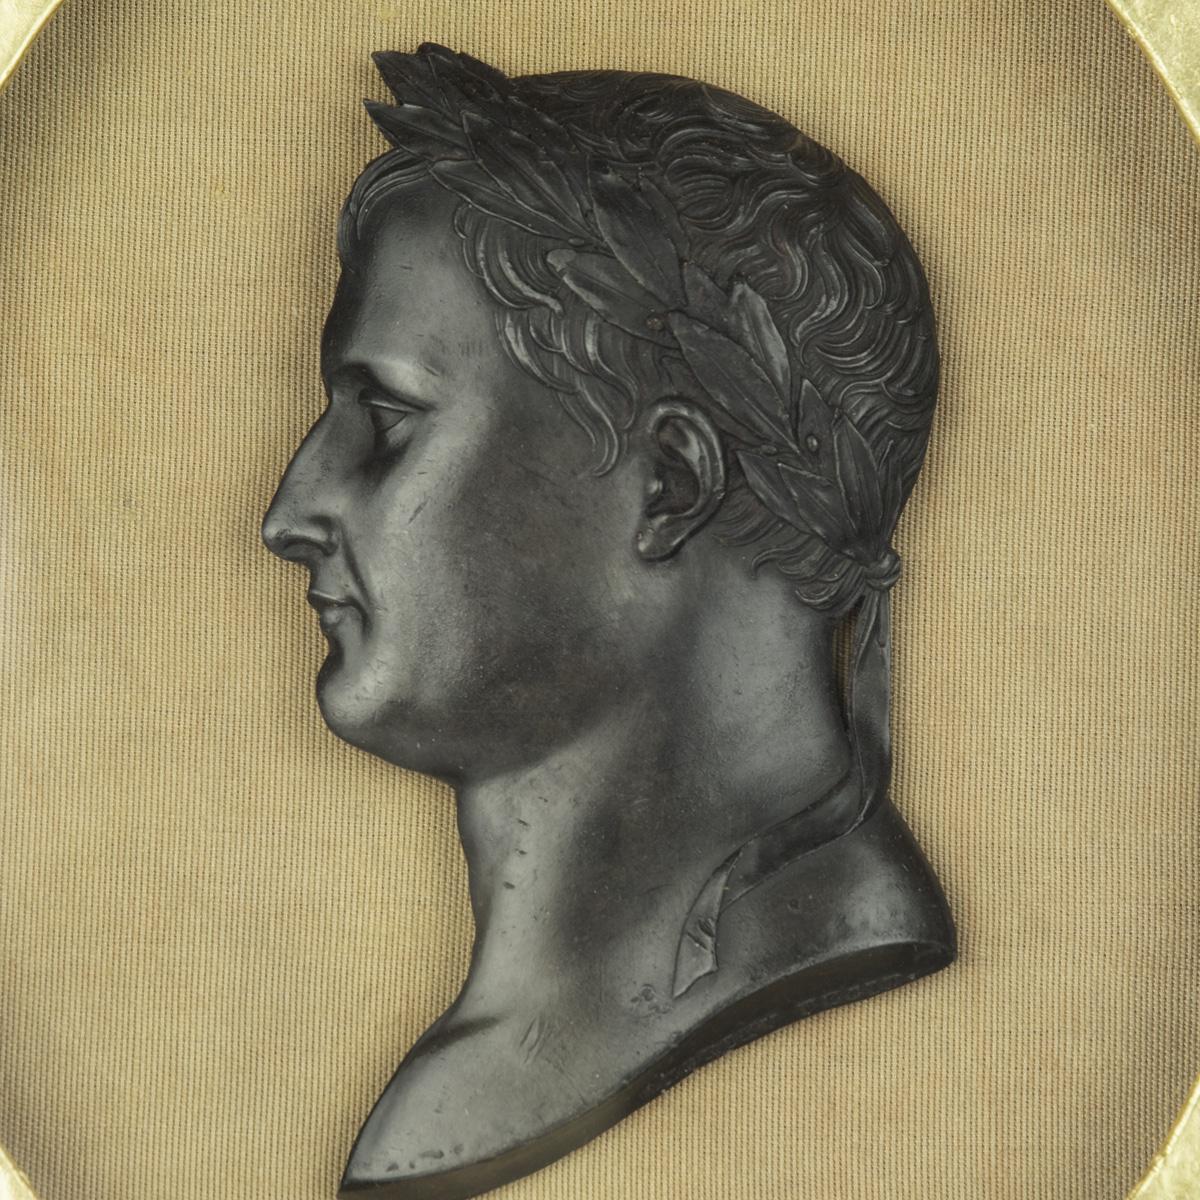 A bronze portrait of Emperor Napoleon Bonaparte, by Andrieu